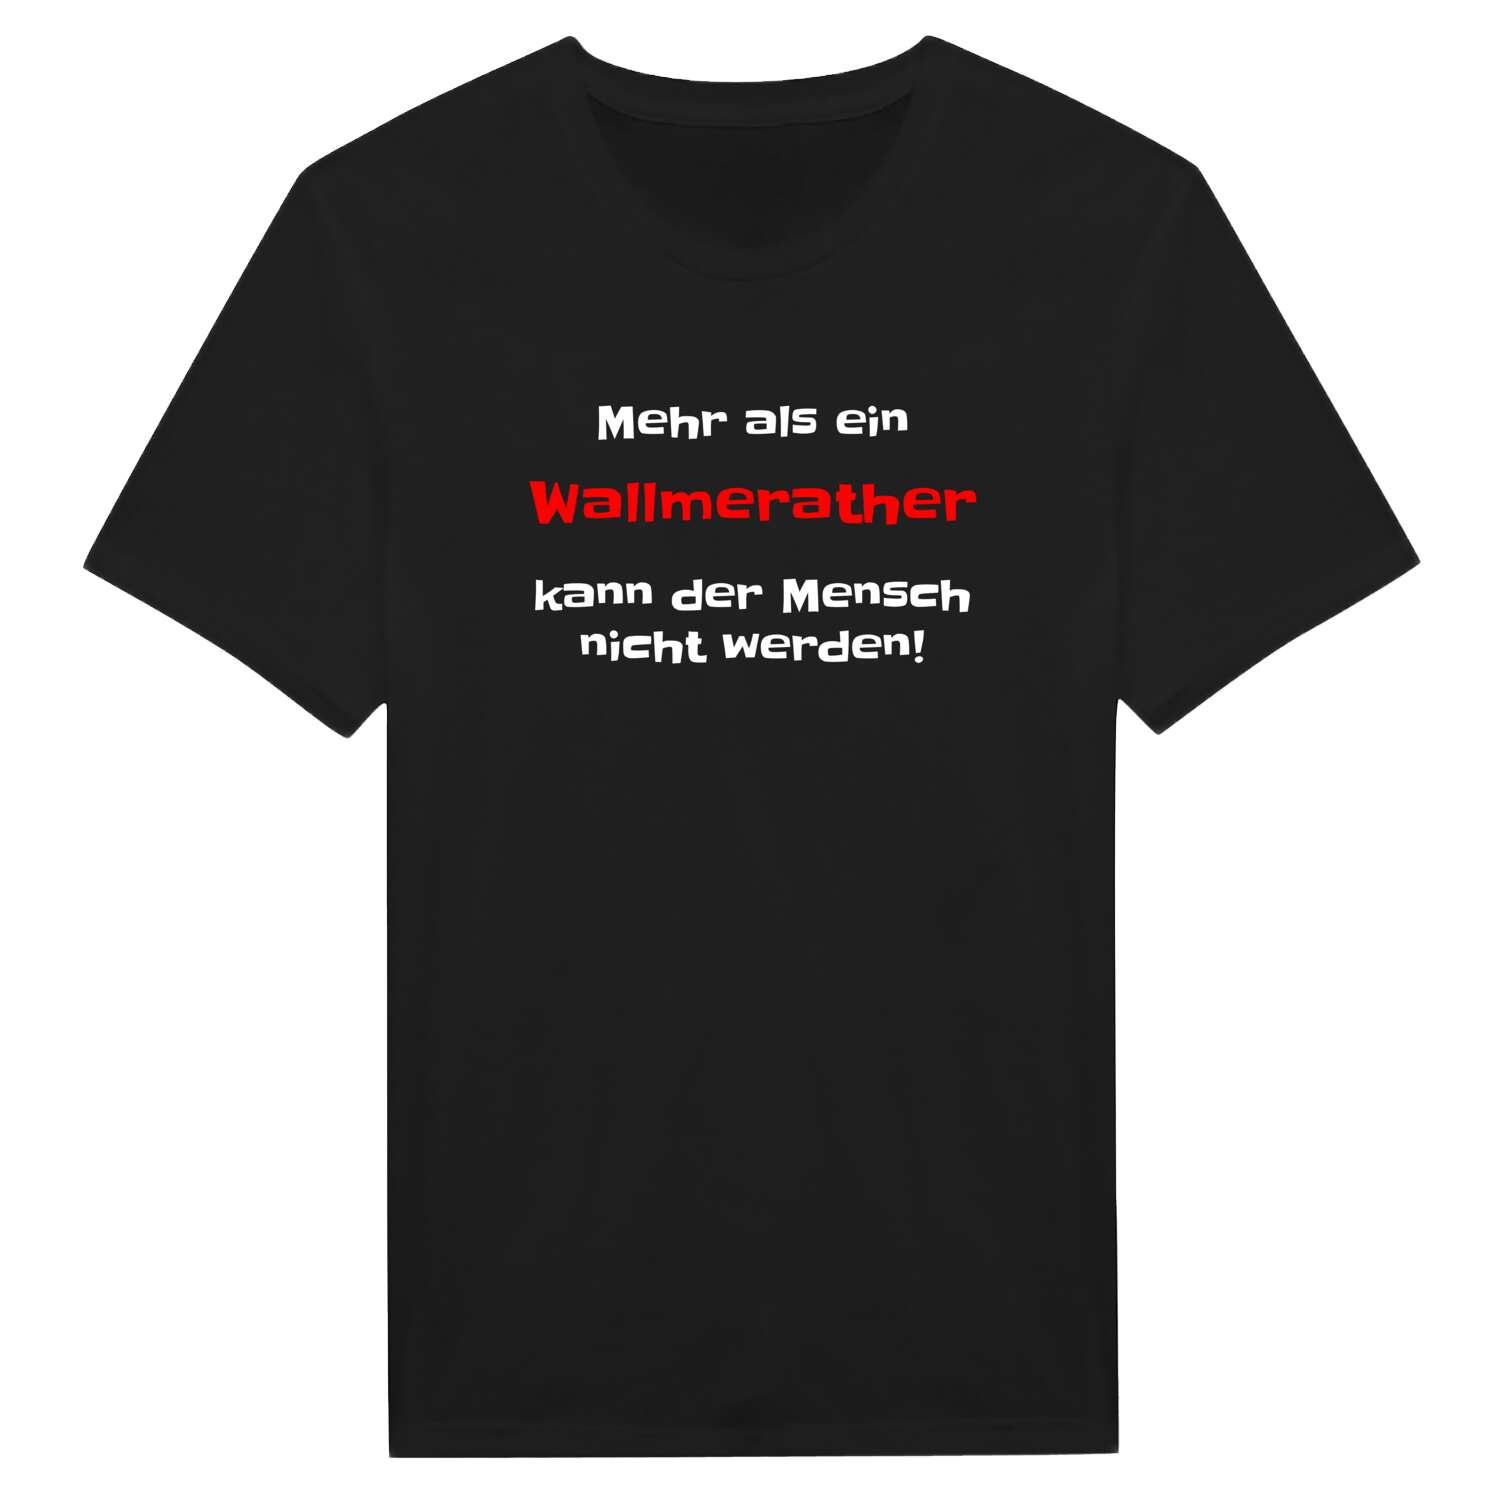 Wallmerath T-Shirt »Mehr als ein«